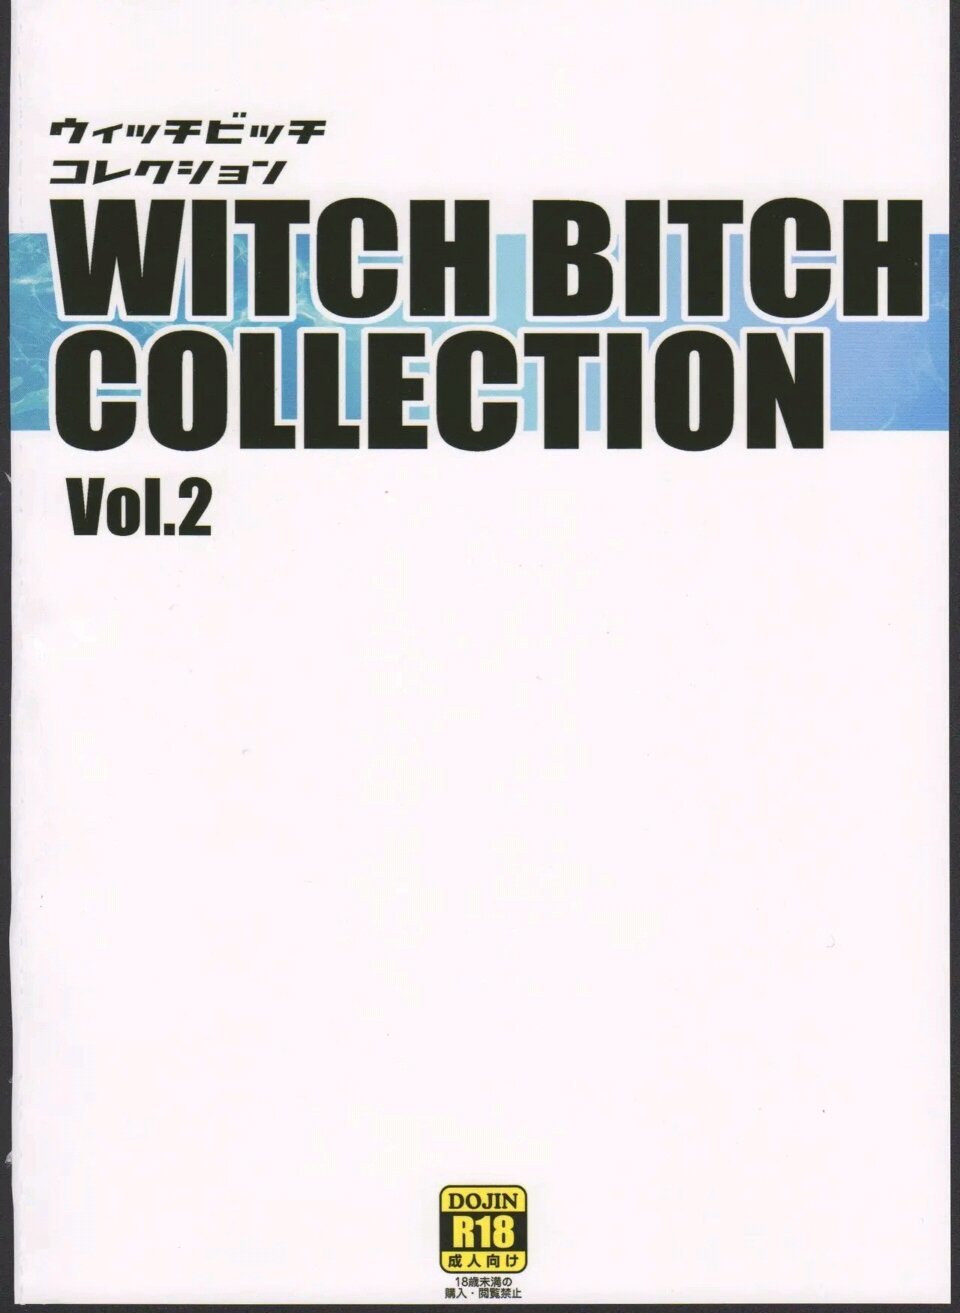 Chichikko Bitch 3 Witch Bitch Collection Vol2 version - 23